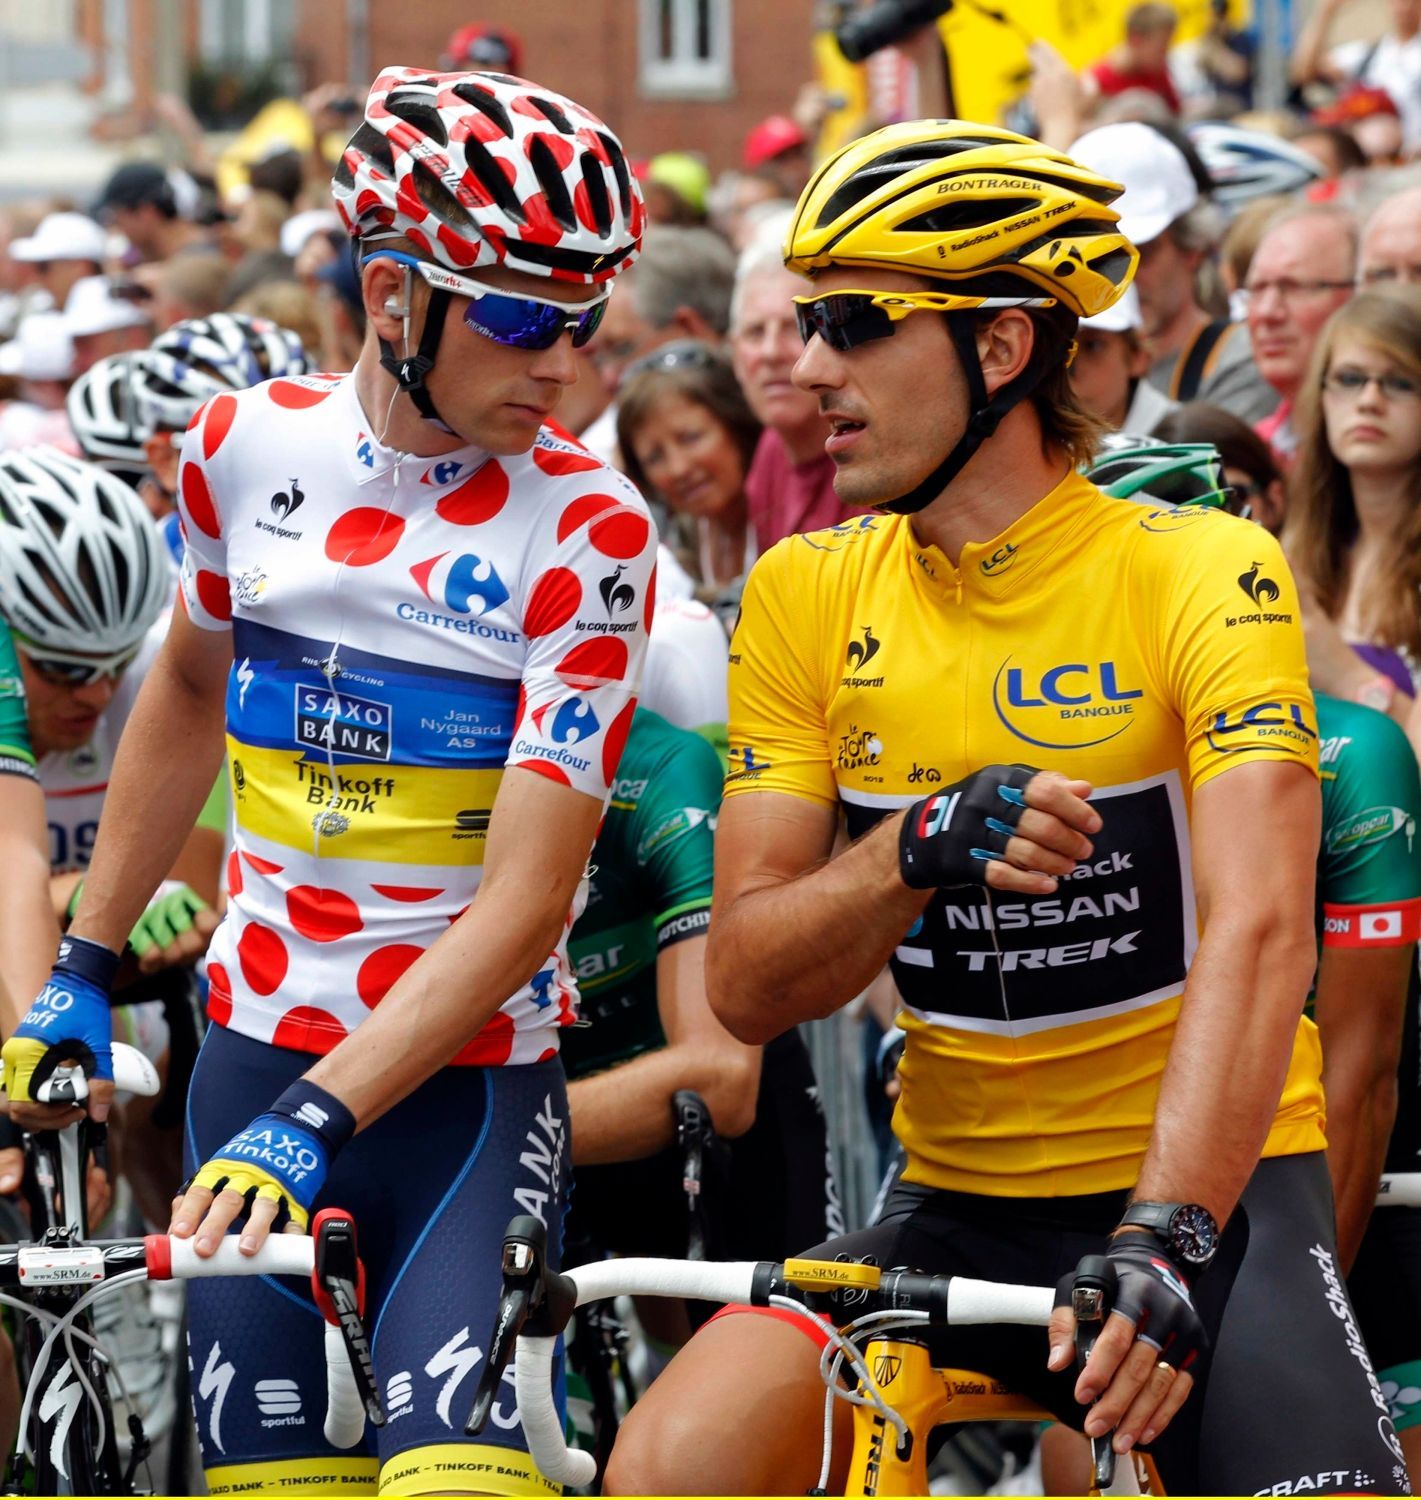 Dánský cyklista Daniel Mørkøv ze stáje Saxo Bank během třetí etapy Tour de France 2012.